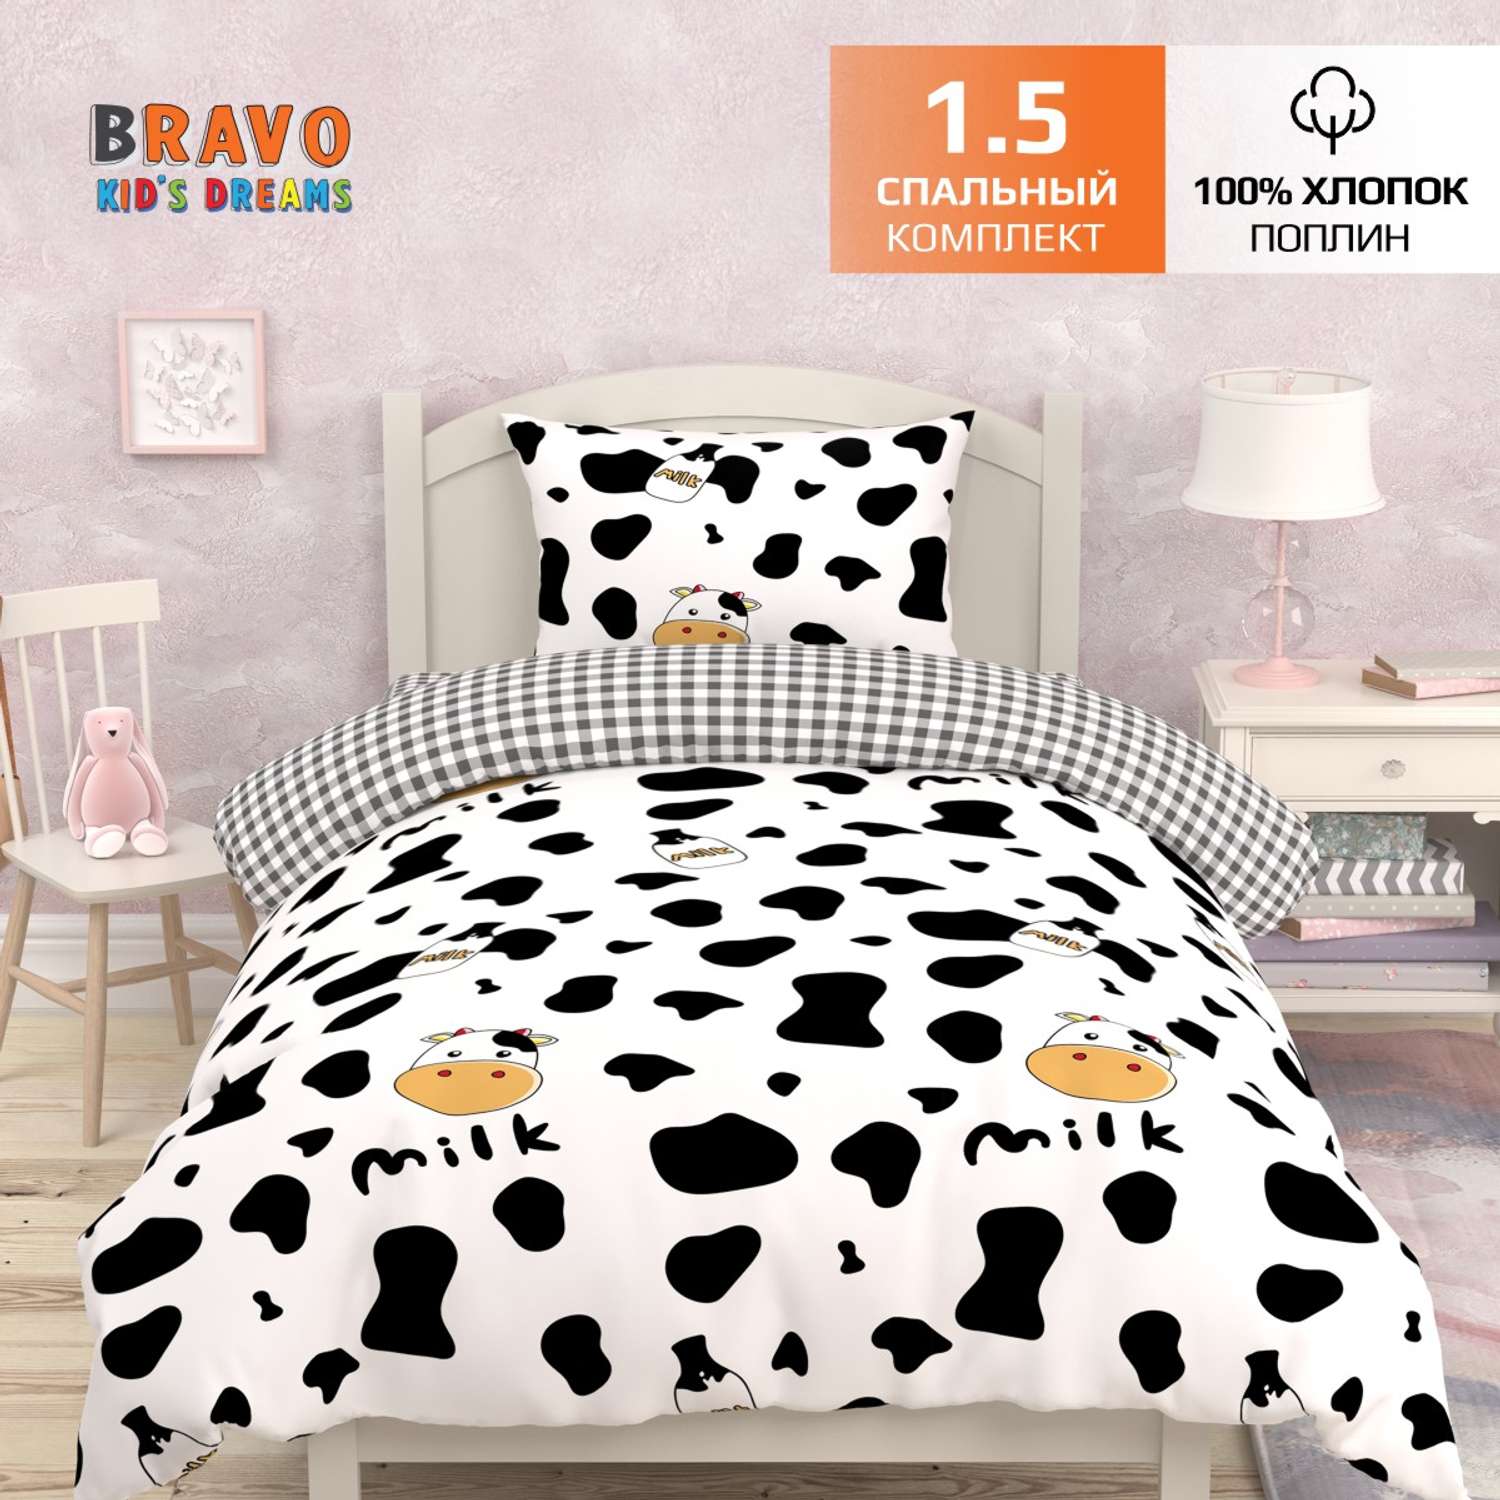 Комплект постельного белья BRAVO kids dreams Молоко 1.5 спальный простыня на резинке 90х200 - фото 1